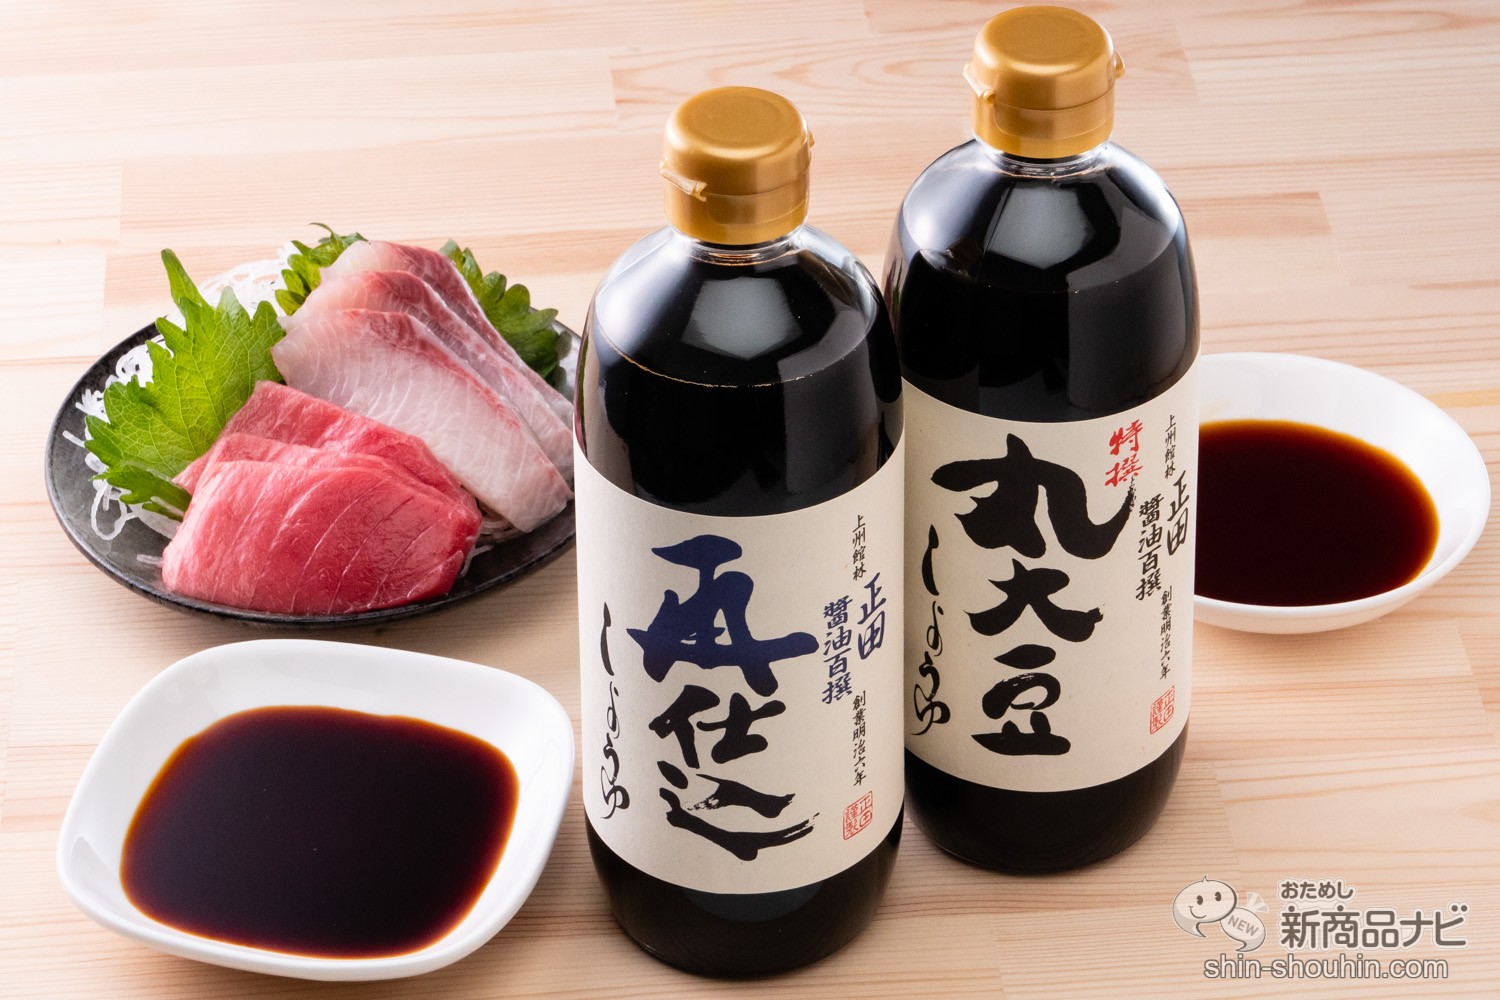 おためし新商品ナビ » Blog Archive » 食材を活かす伝統の味。老舗 正田醤油の『醤油百撰』は様々な料理と相性抜群、ギフトにもおすすめ！